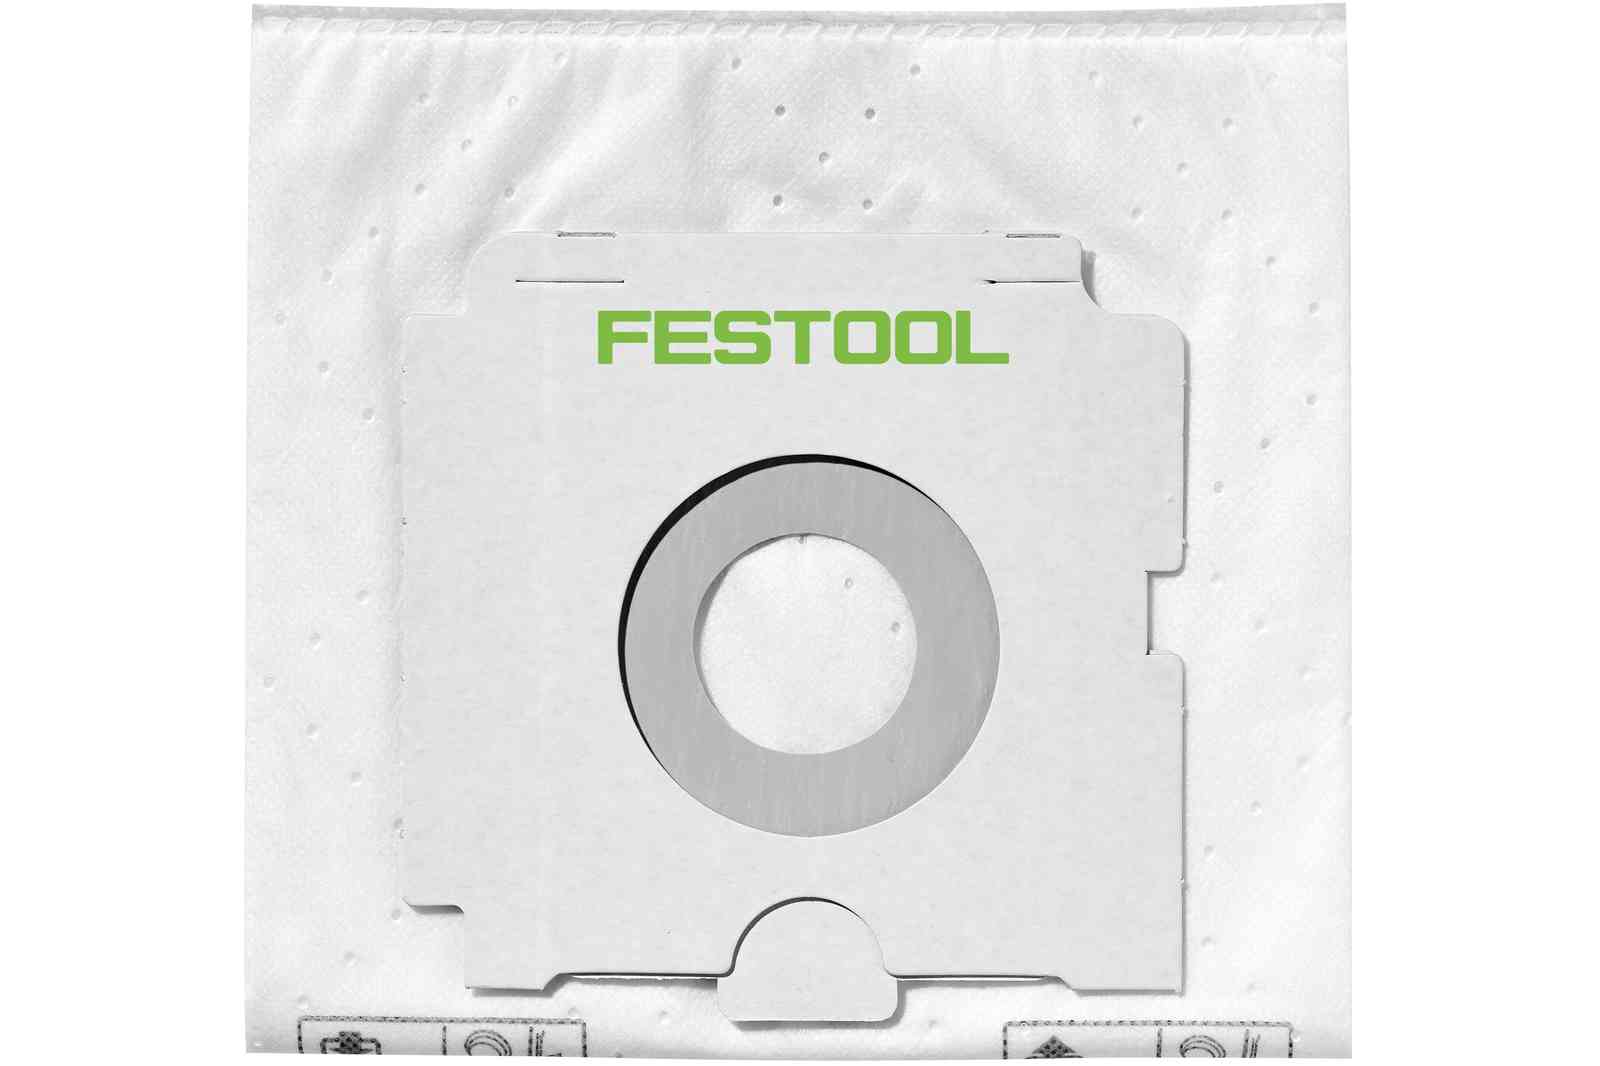 FESTOOL -  Sacchetto carta filtro - note SELFCLEAN - info FIS-CT 26/5 - PER CT 26